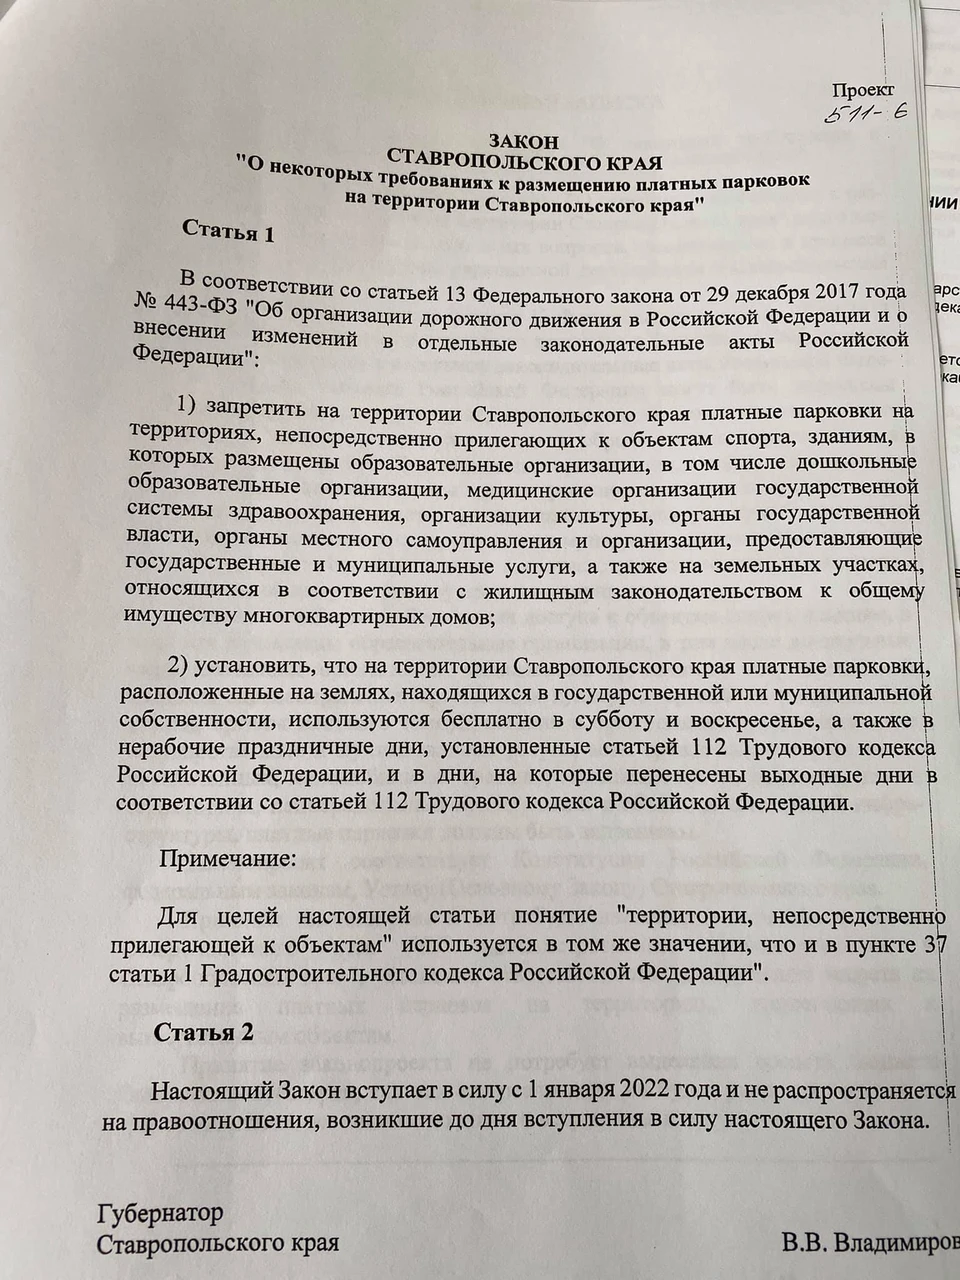 Правовой акт называется «О некоторых требованиях к размещению платных парковок на территории Ставропольского края»